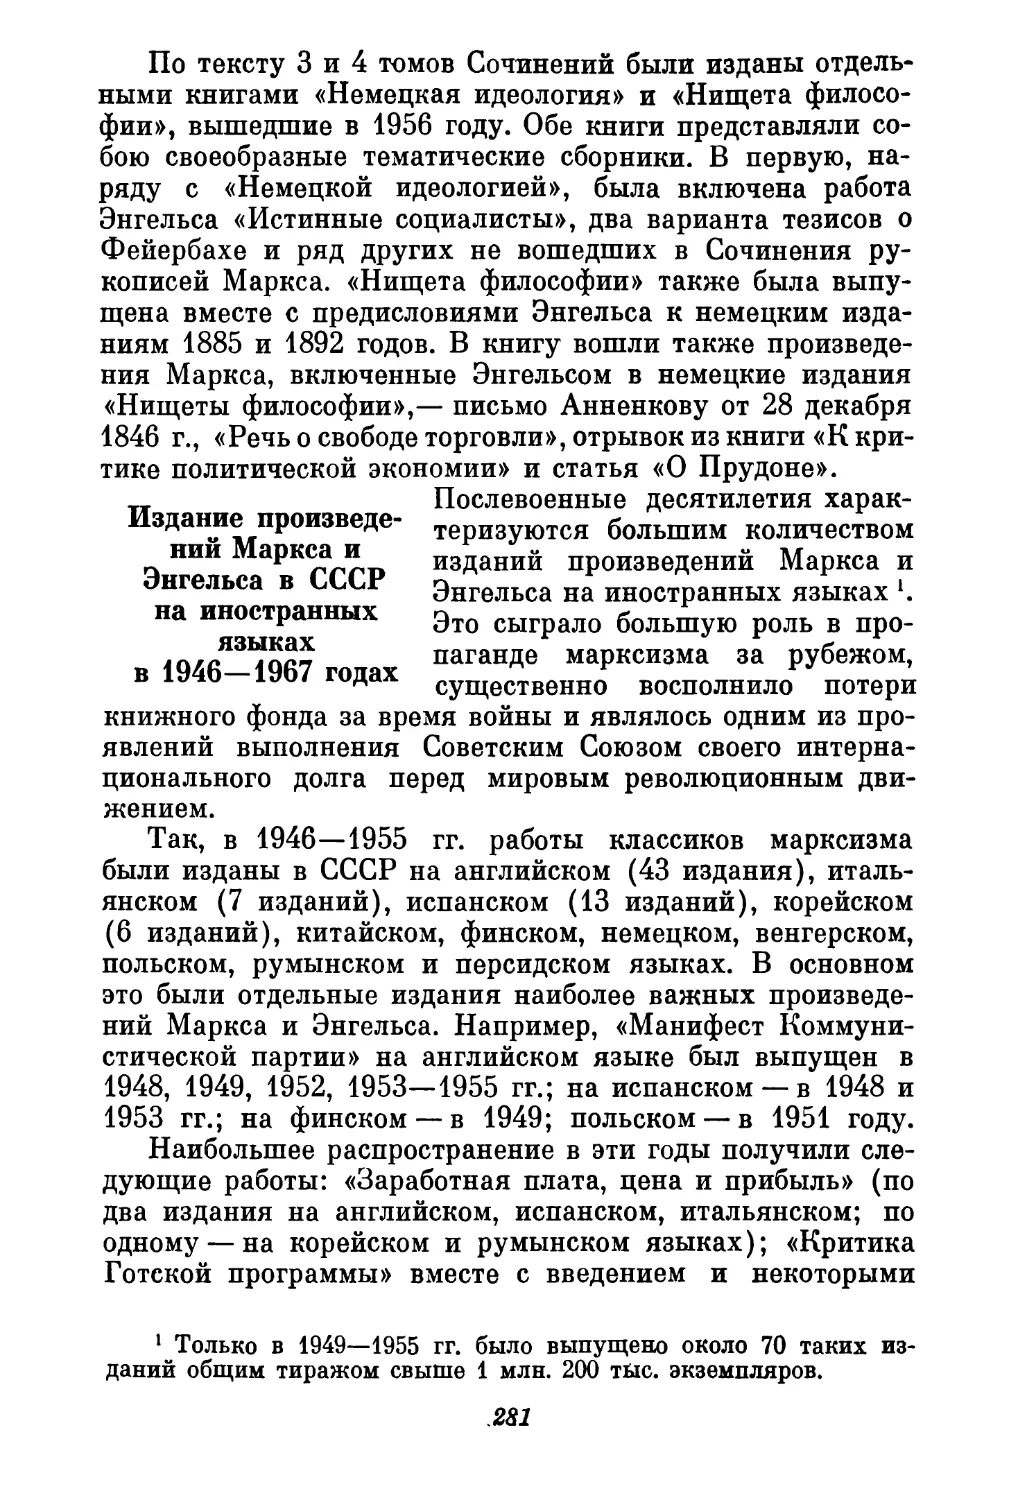 Издание произведений Маркса и Энгельса в СССР на иностранных языках в 1946—1967  годах —